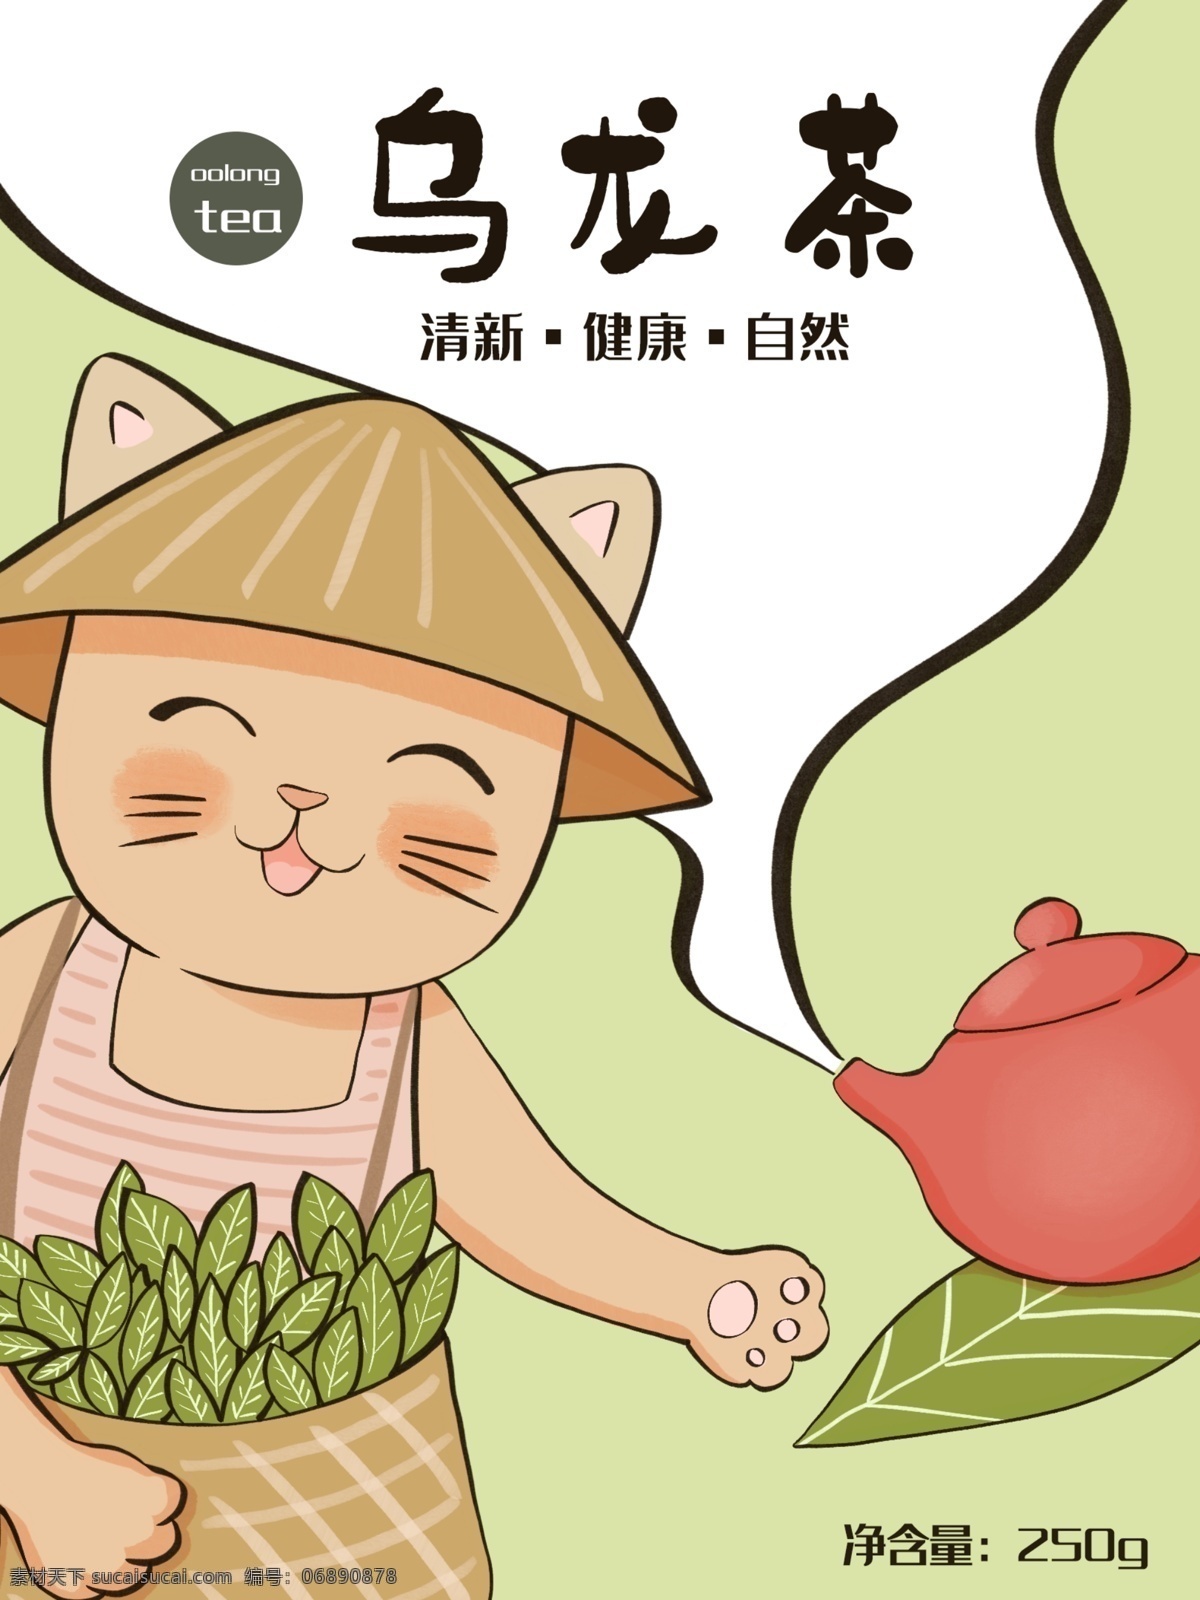 乌龙 茶叶 小 清新 可爱 包装 乌龙茶 绿茶 自然 健康 绿色 猫咪 茶壶